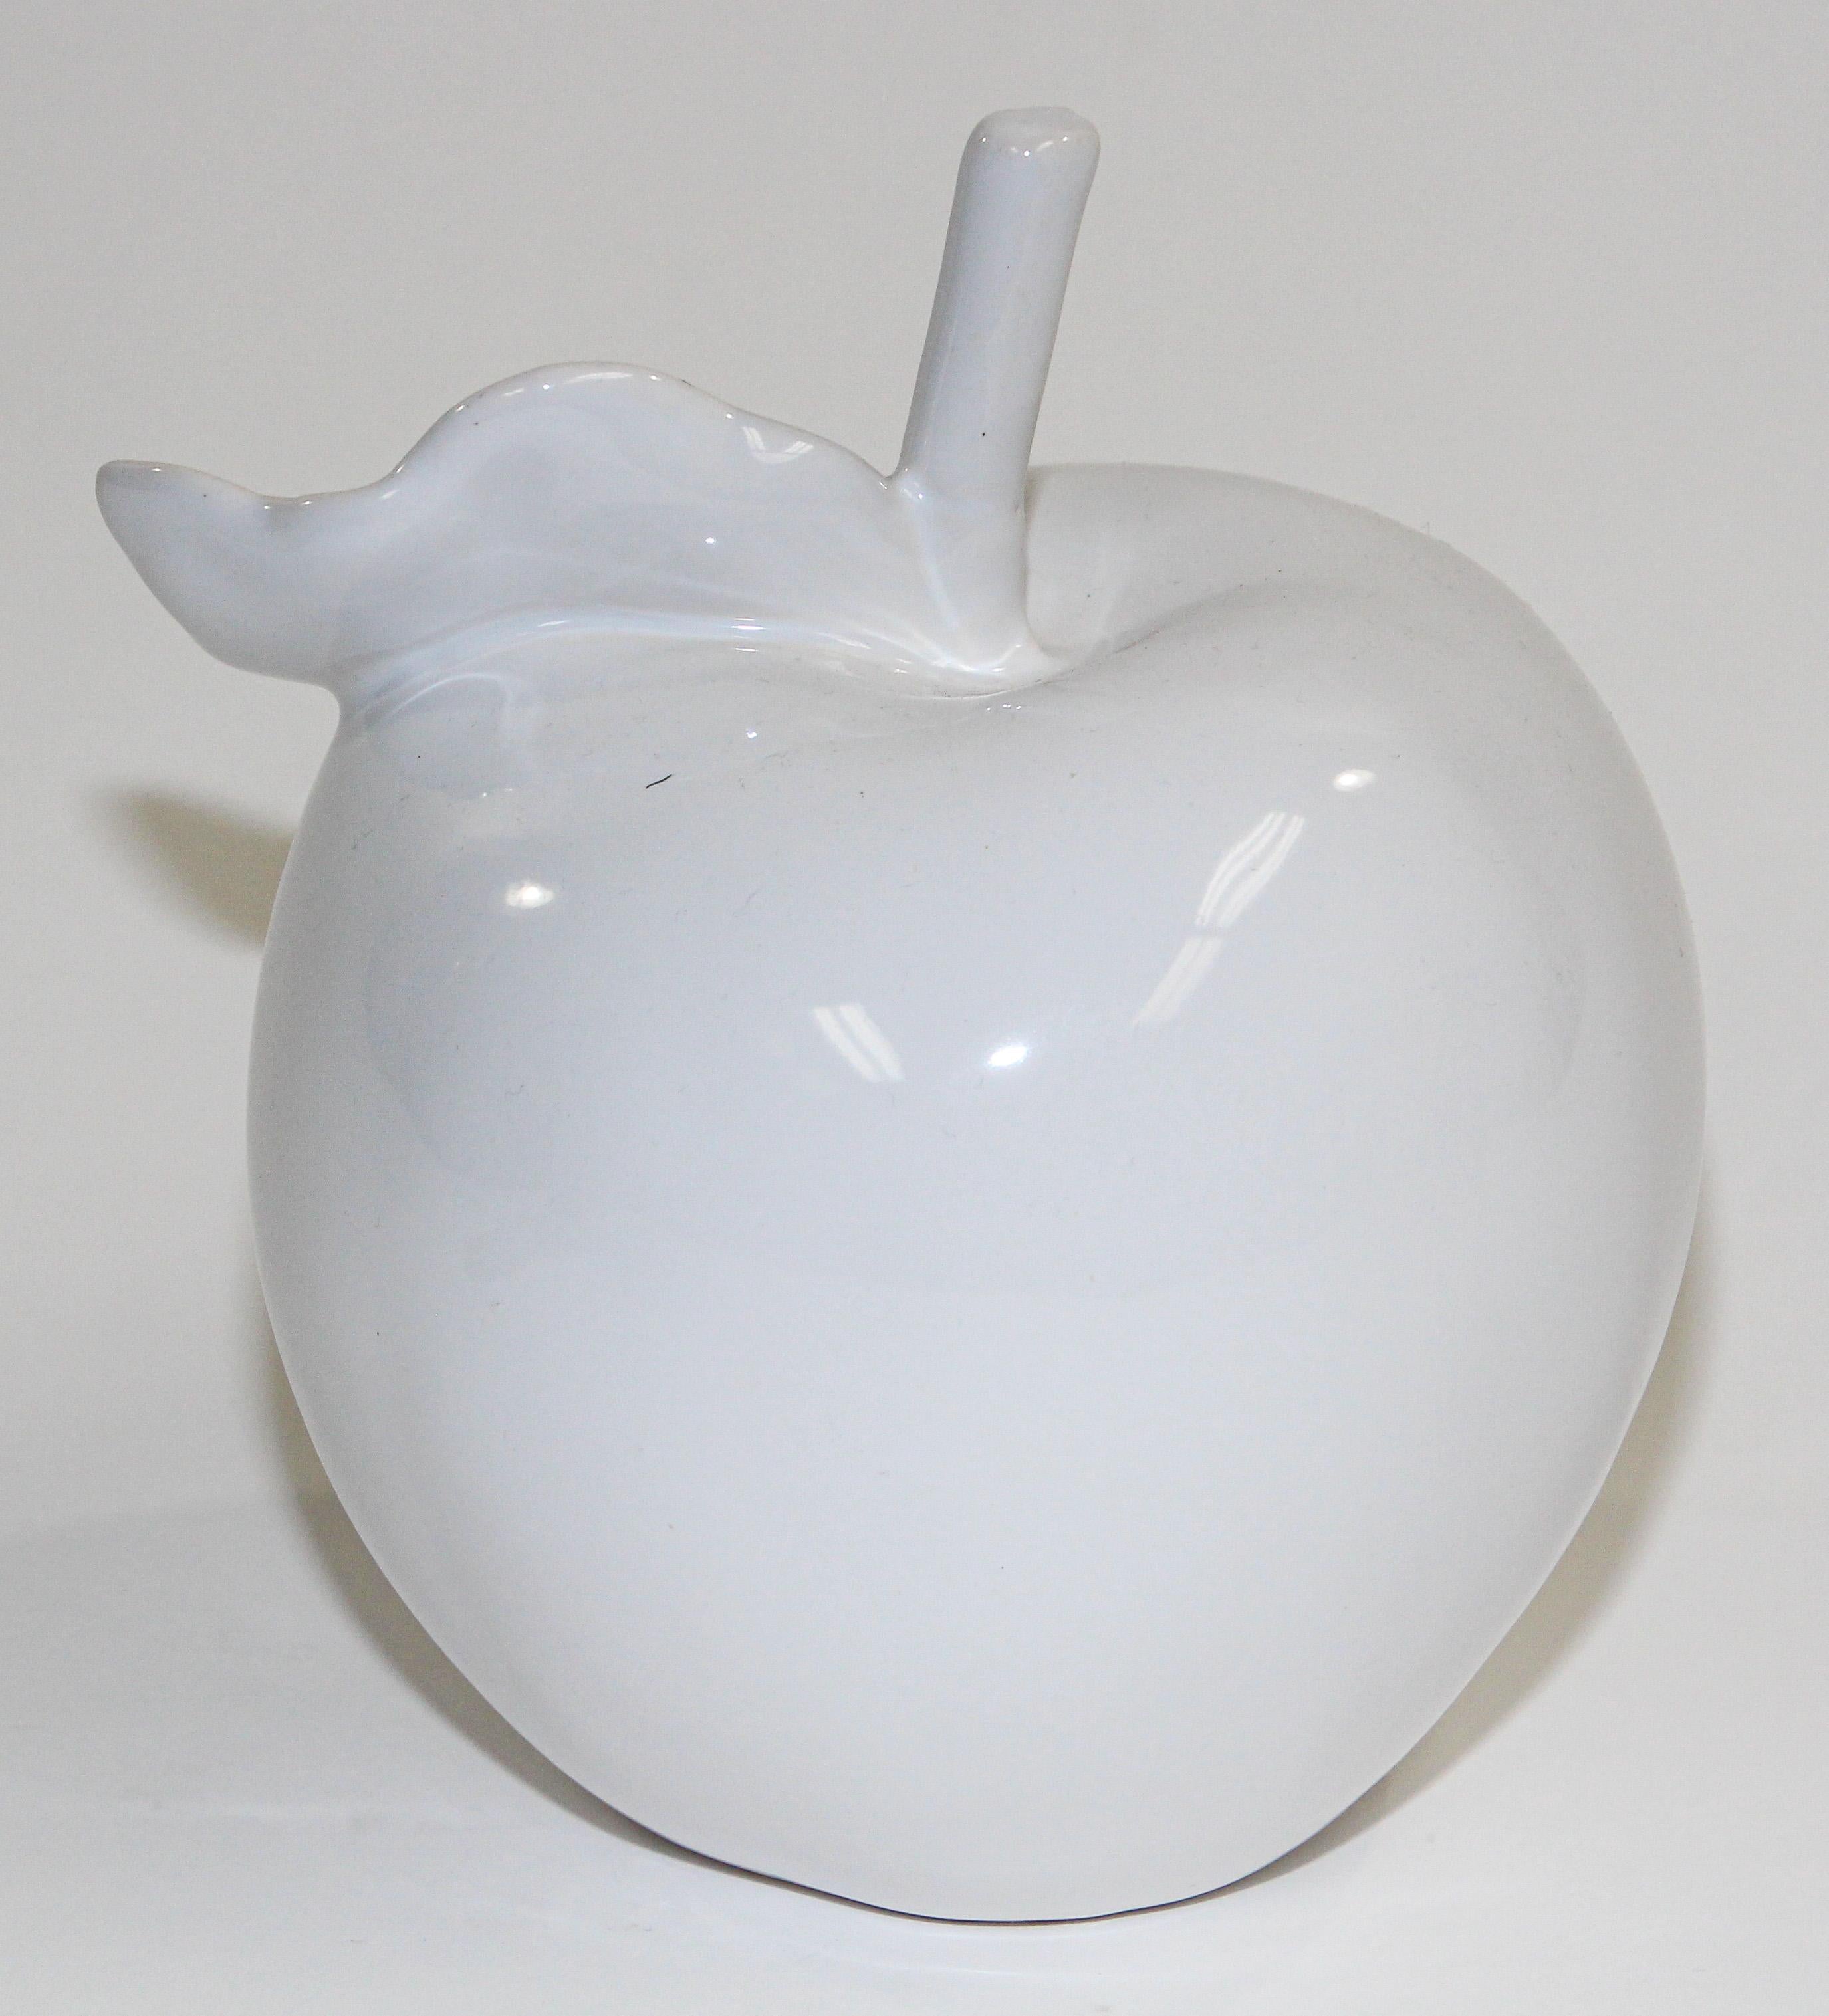 Organic Modern classique minimaliste sculpture de pomme en porcelaine blanche.
La beauté des formes naturelles est mise en valeur avec cette forme de pomme qui orne les natures mortes depuis des siècles. La pomme est en porcelaine Blanc de